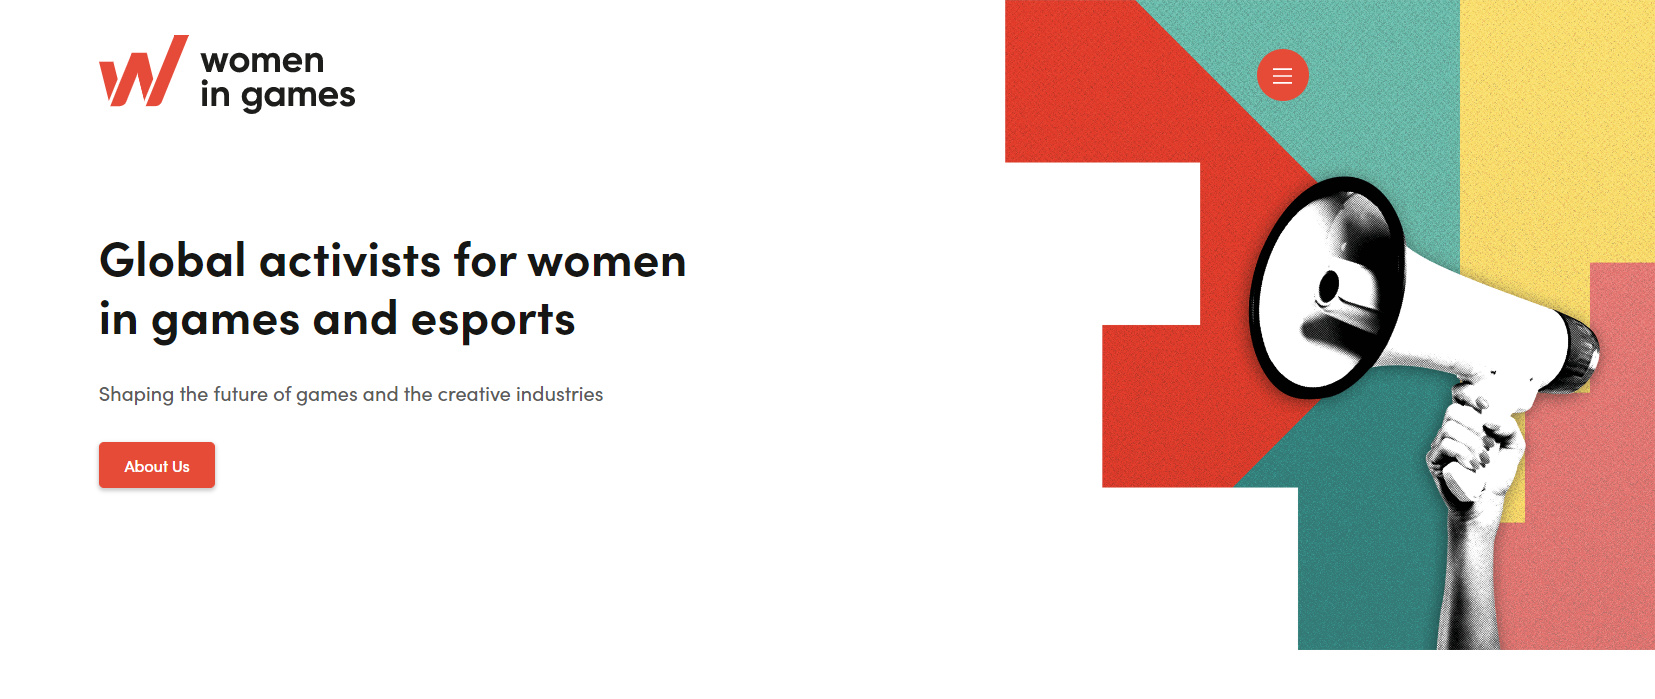 【PC游戏】女性游戏组织Women in Games表示游戏行业正在倒退-第1张